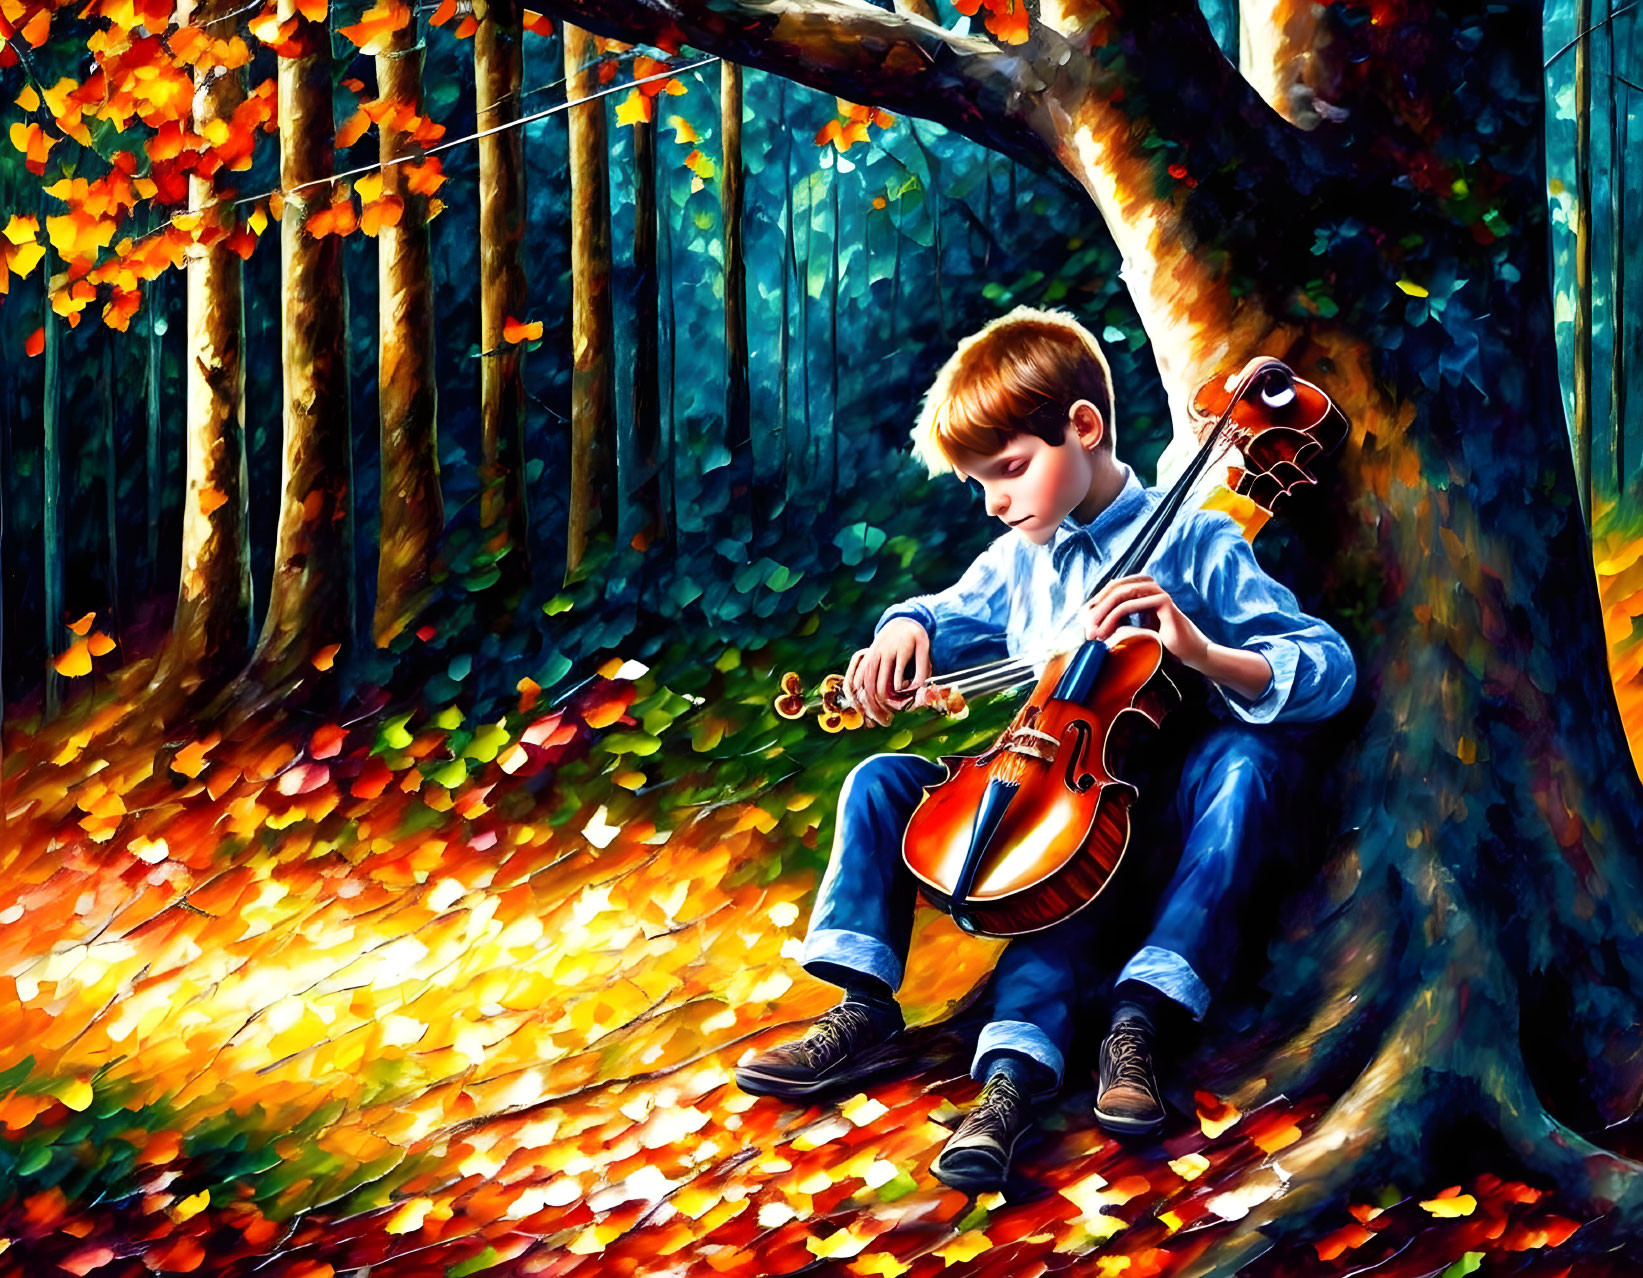 Vincent the Violinist 